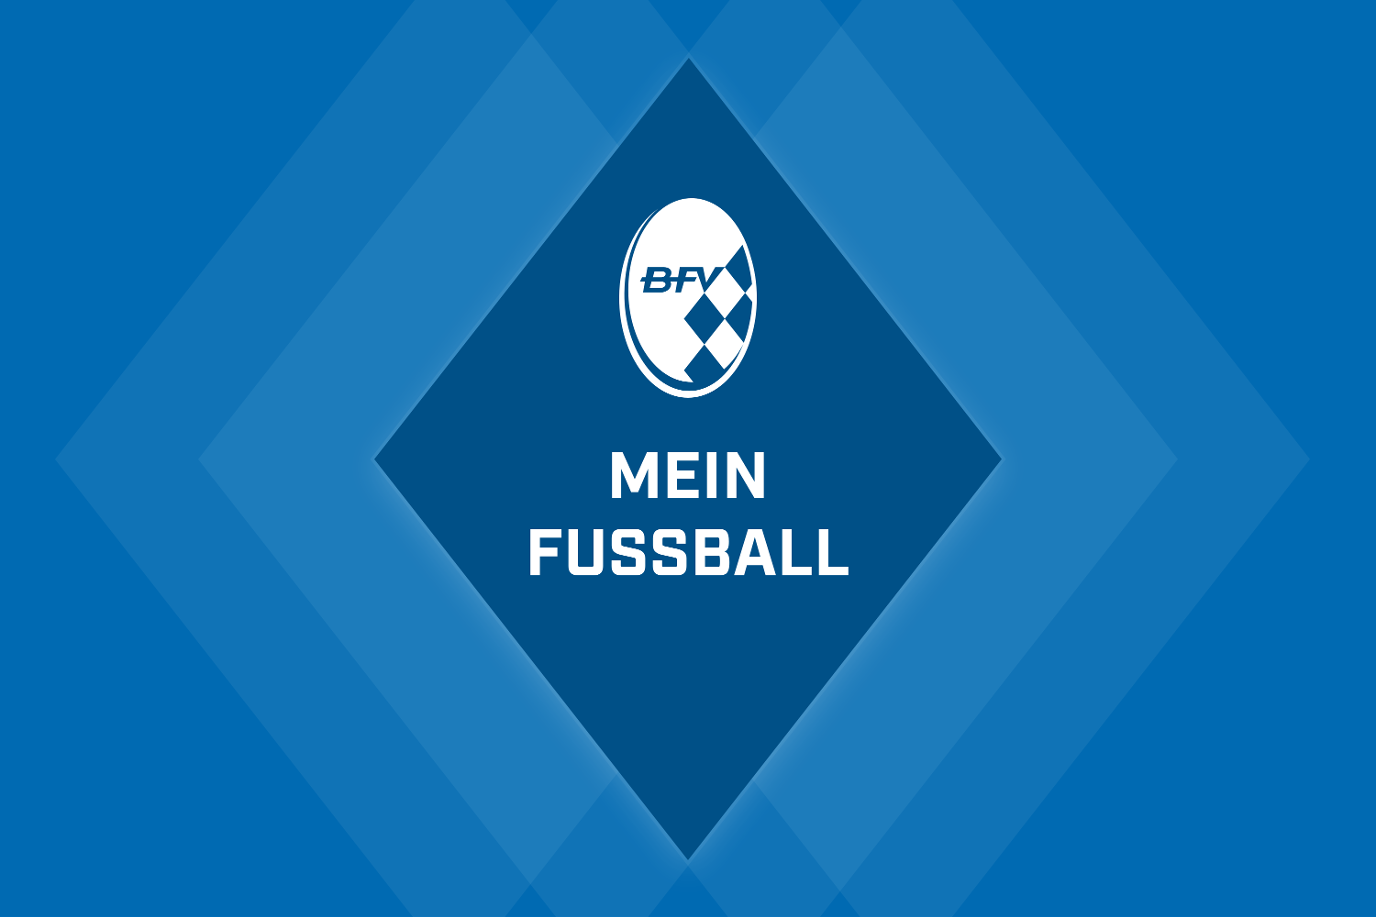 Bayerischer Fussball-Verband